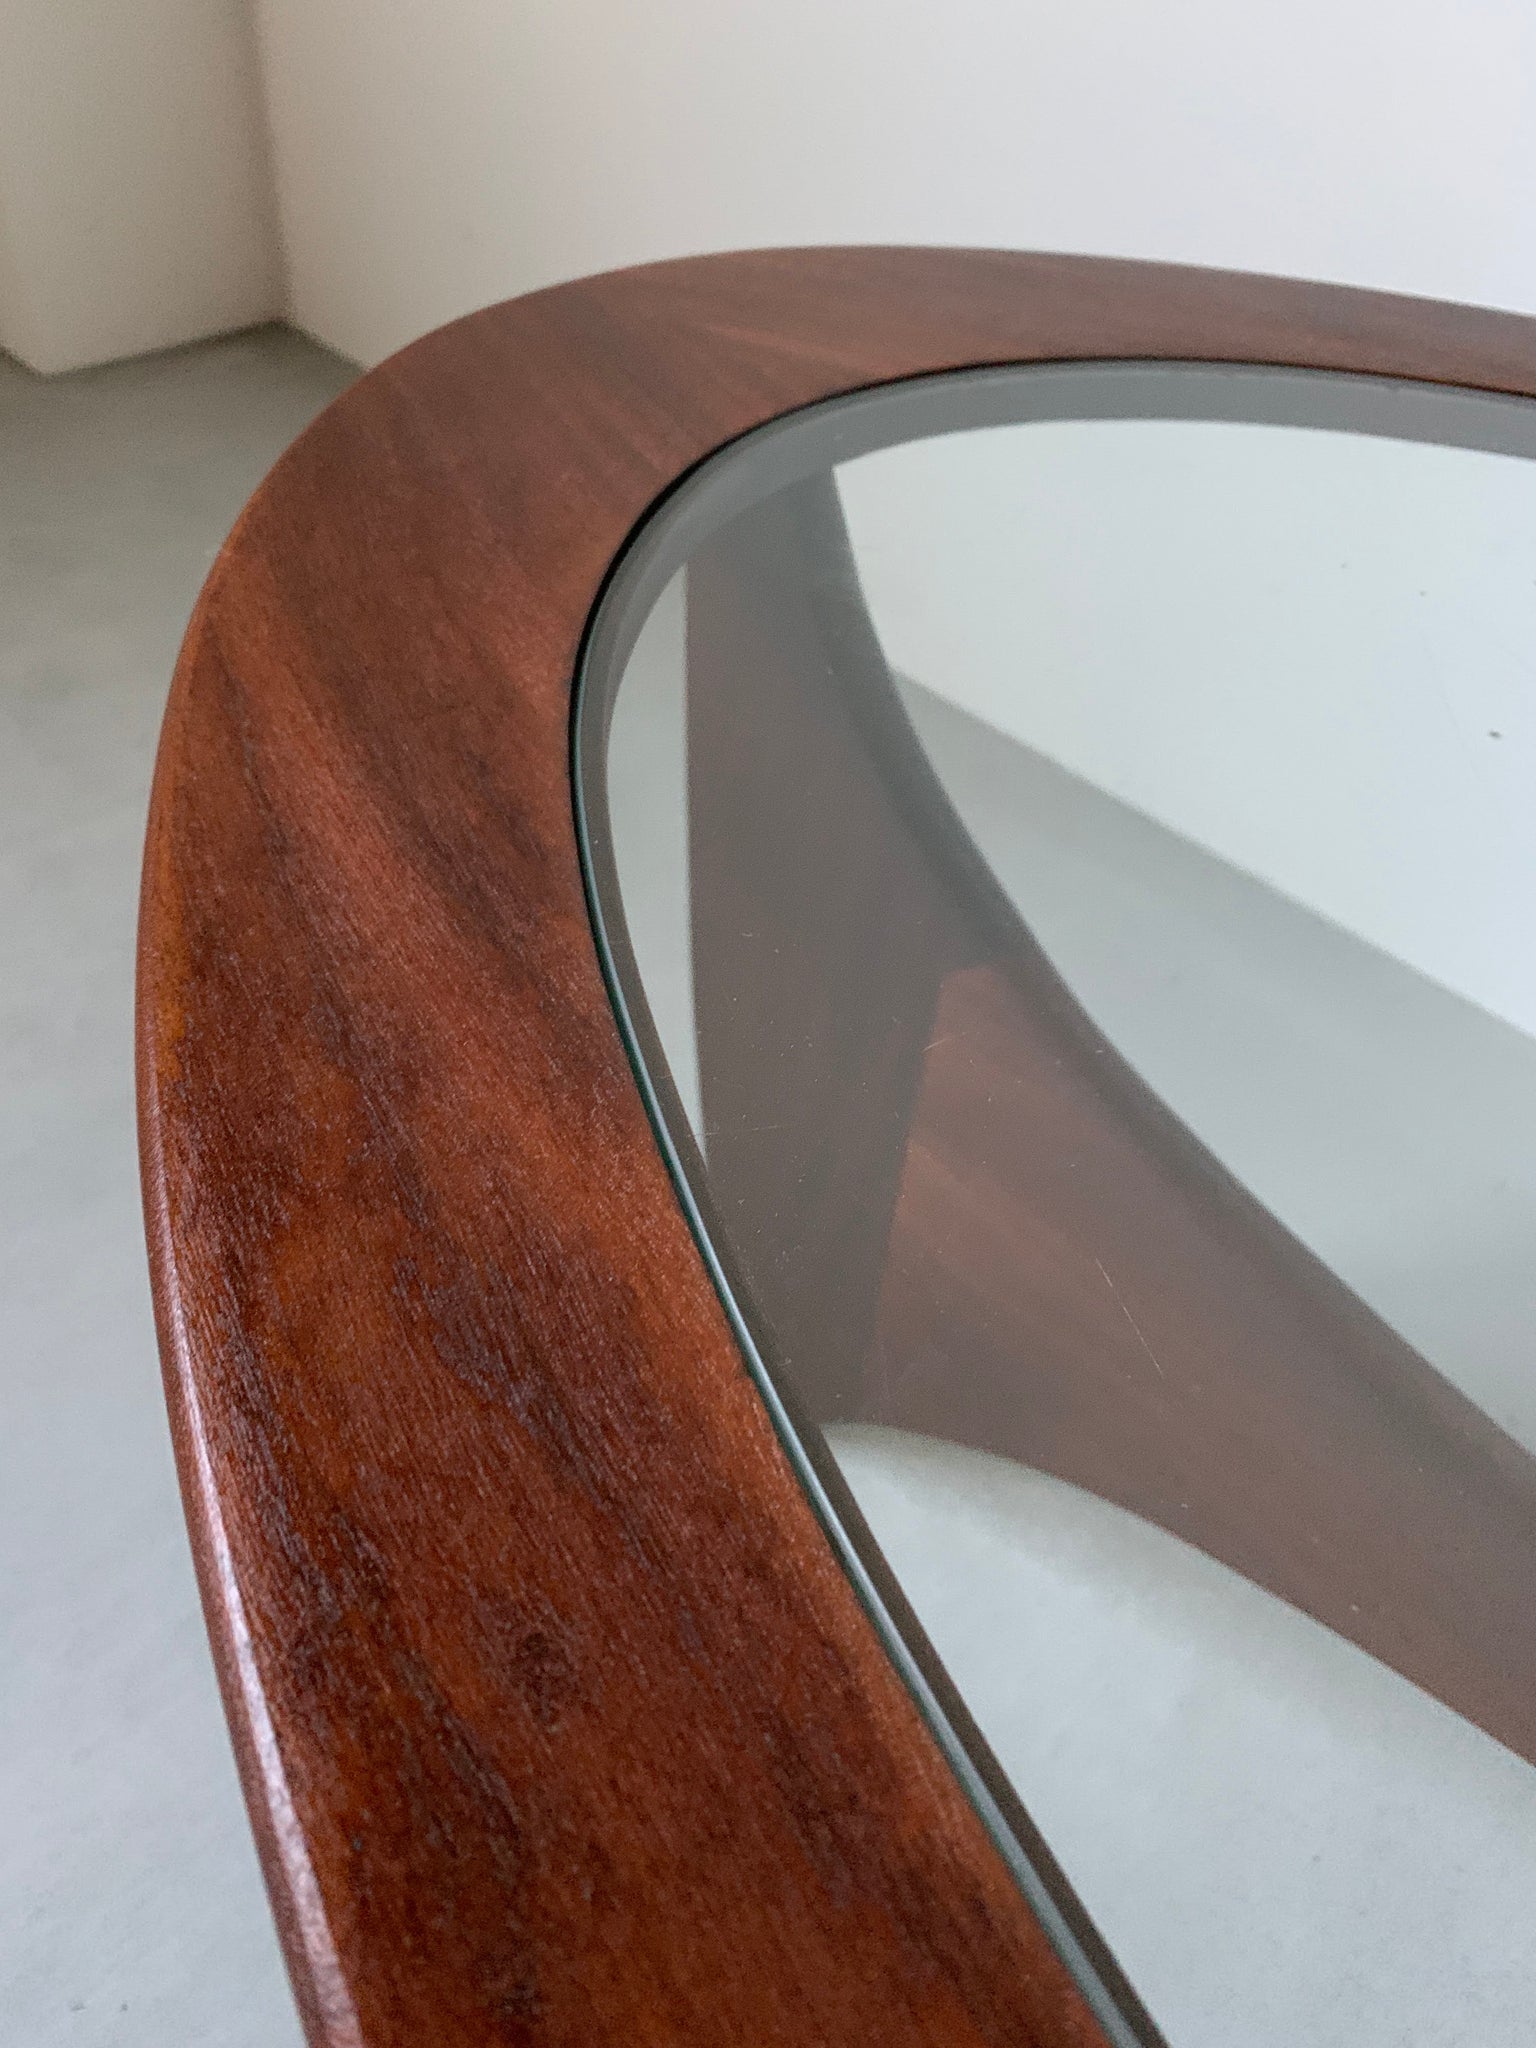 ジープラン グラス トップ オーバル コーヒー テーブル / g-plan glass top oval coffee table #0238